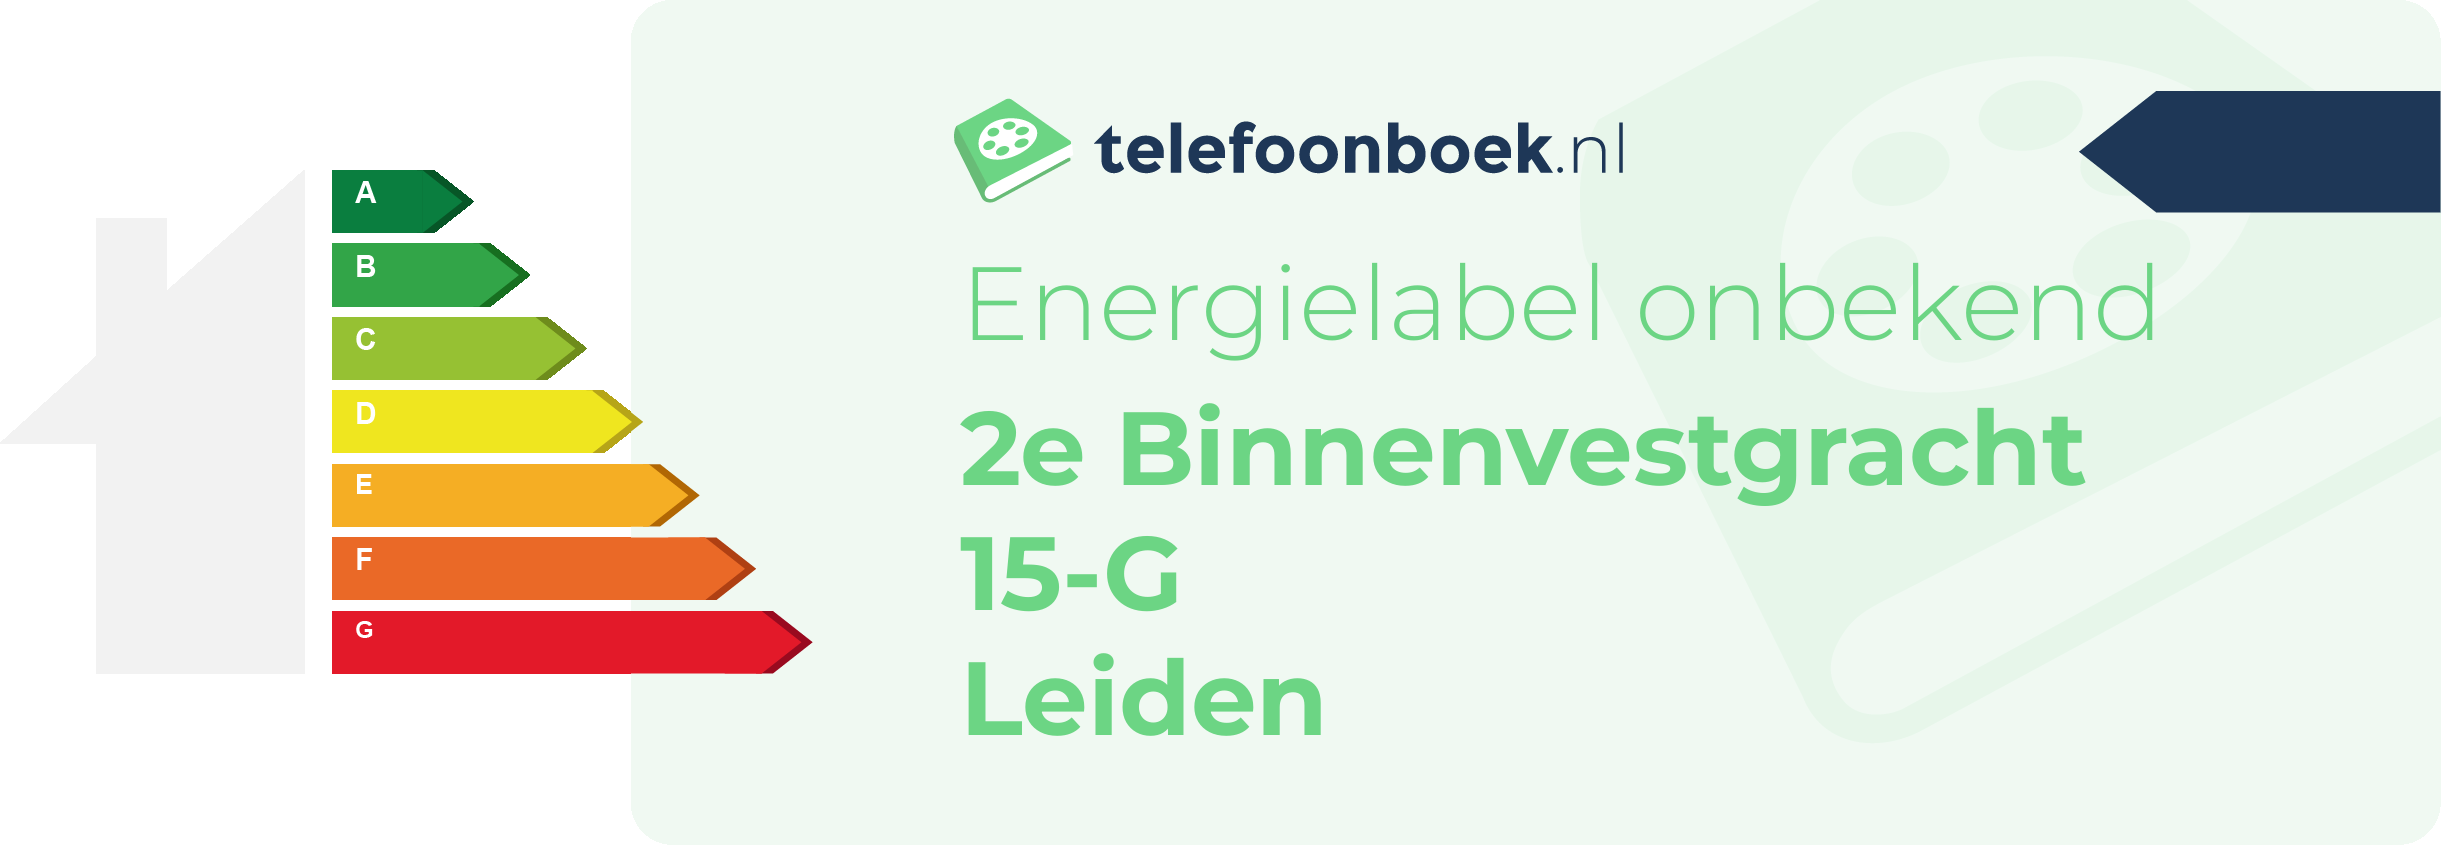 Energielabel 2e Binnenvestgracht 15-G Leiden